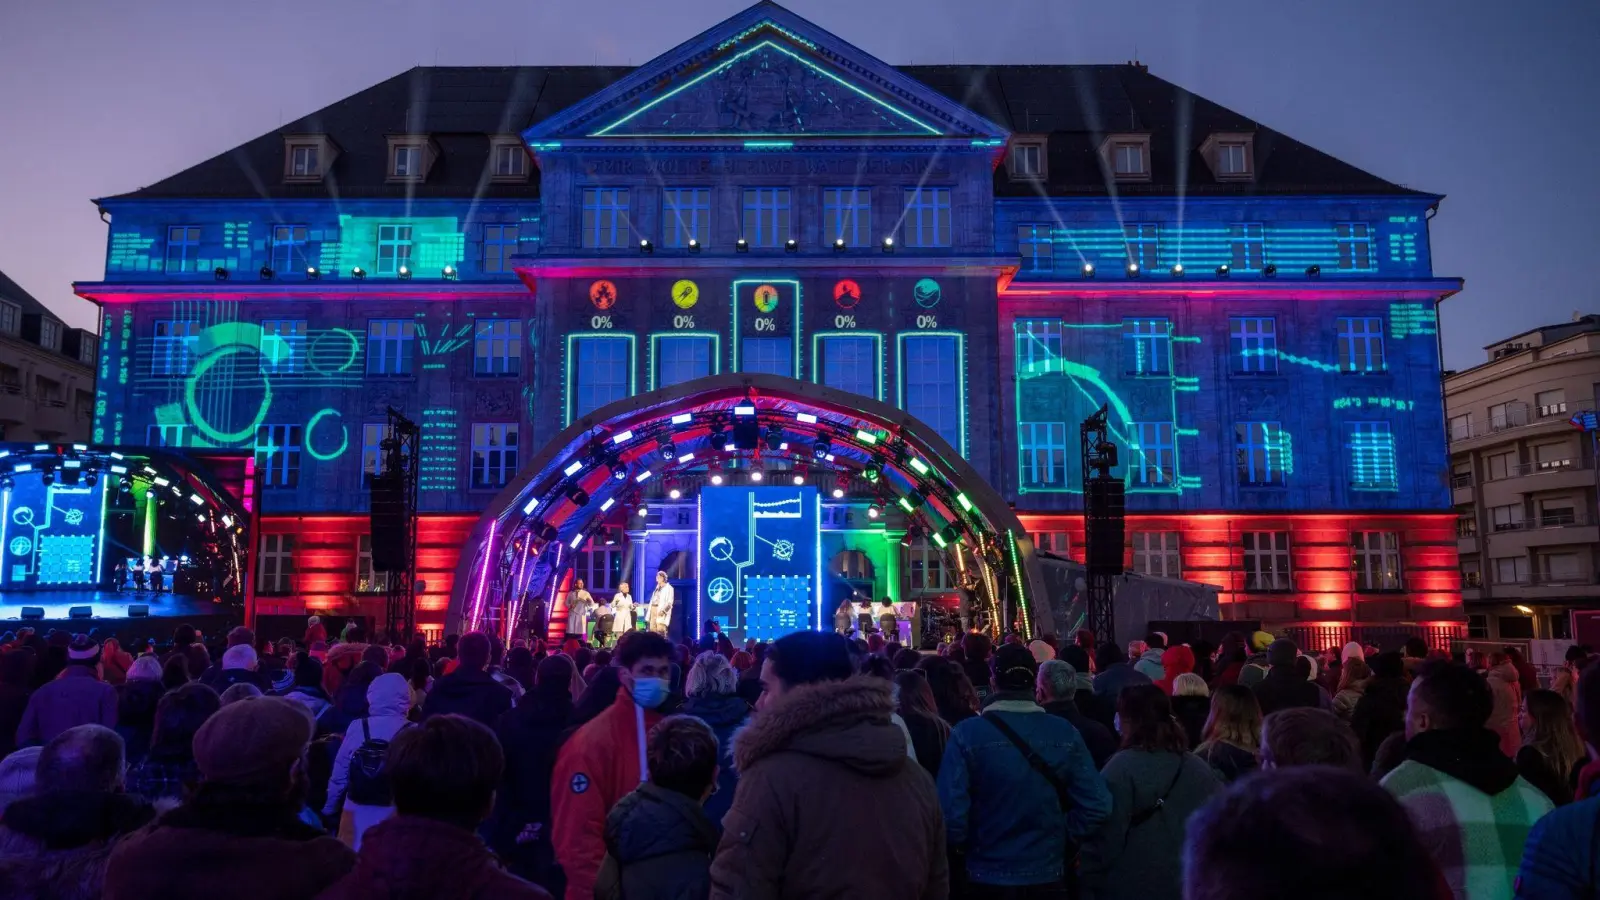 Das Rathaus in Esch-sur-Alzette wird bei der Eröffnung von Esch 2022 als Kulturhauptstadt Europas farbenprächtig als Raketenzentrale angestrahlt. (Foto: Harald Tittel/dpa)